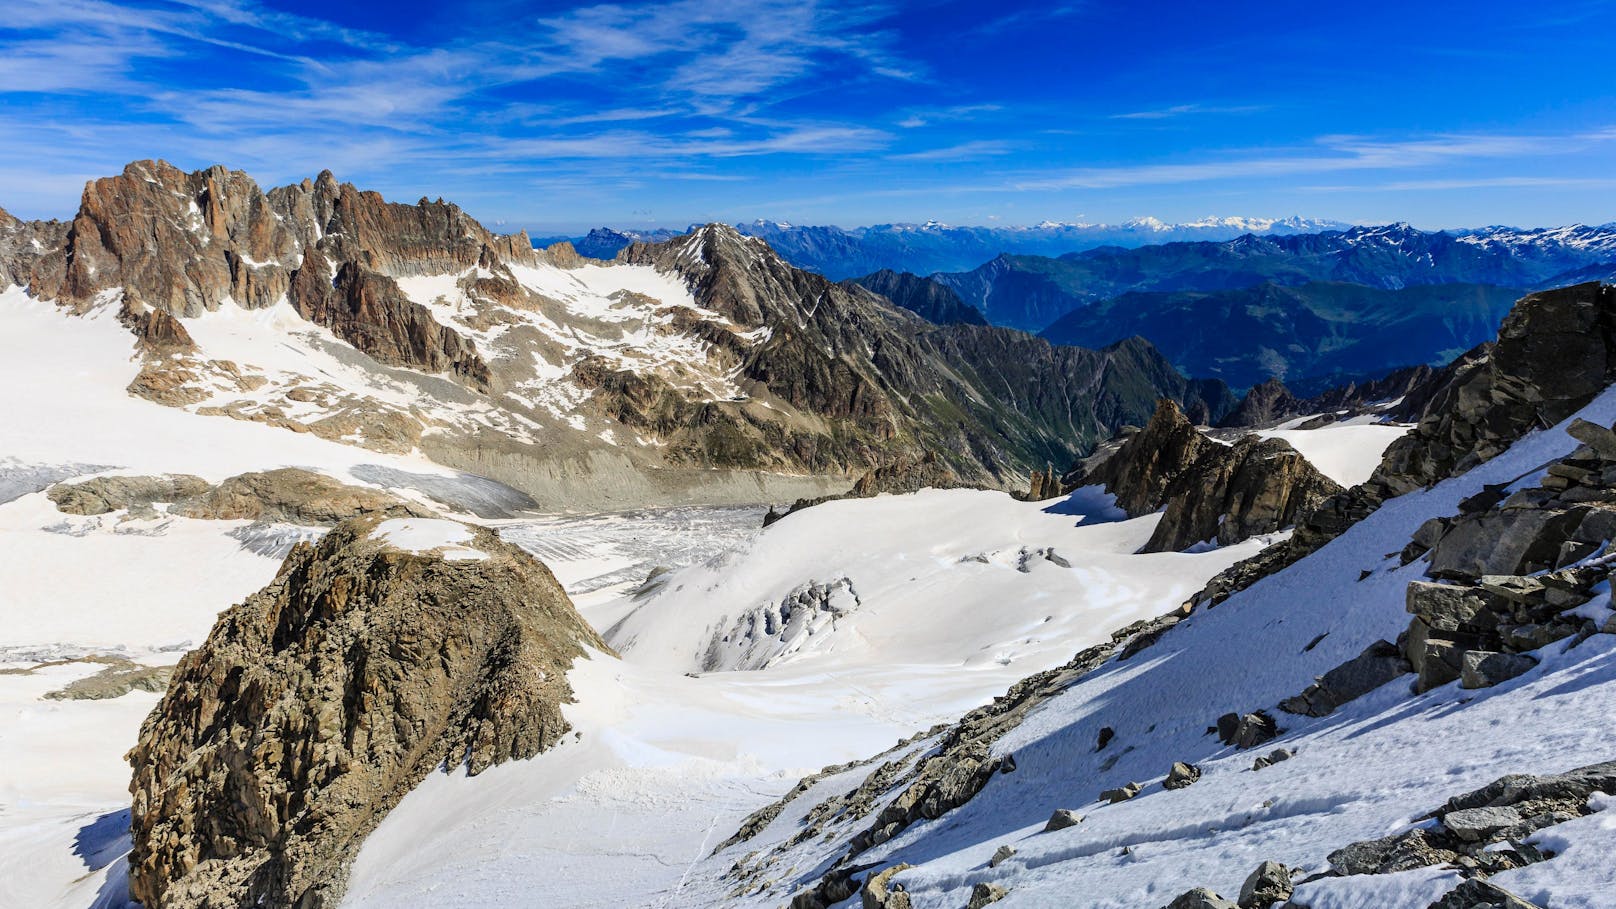 Auf den schmelzenden Walliser Gletschern werden in diesem Sommer immer wieder menschliche Überreste gefunden.